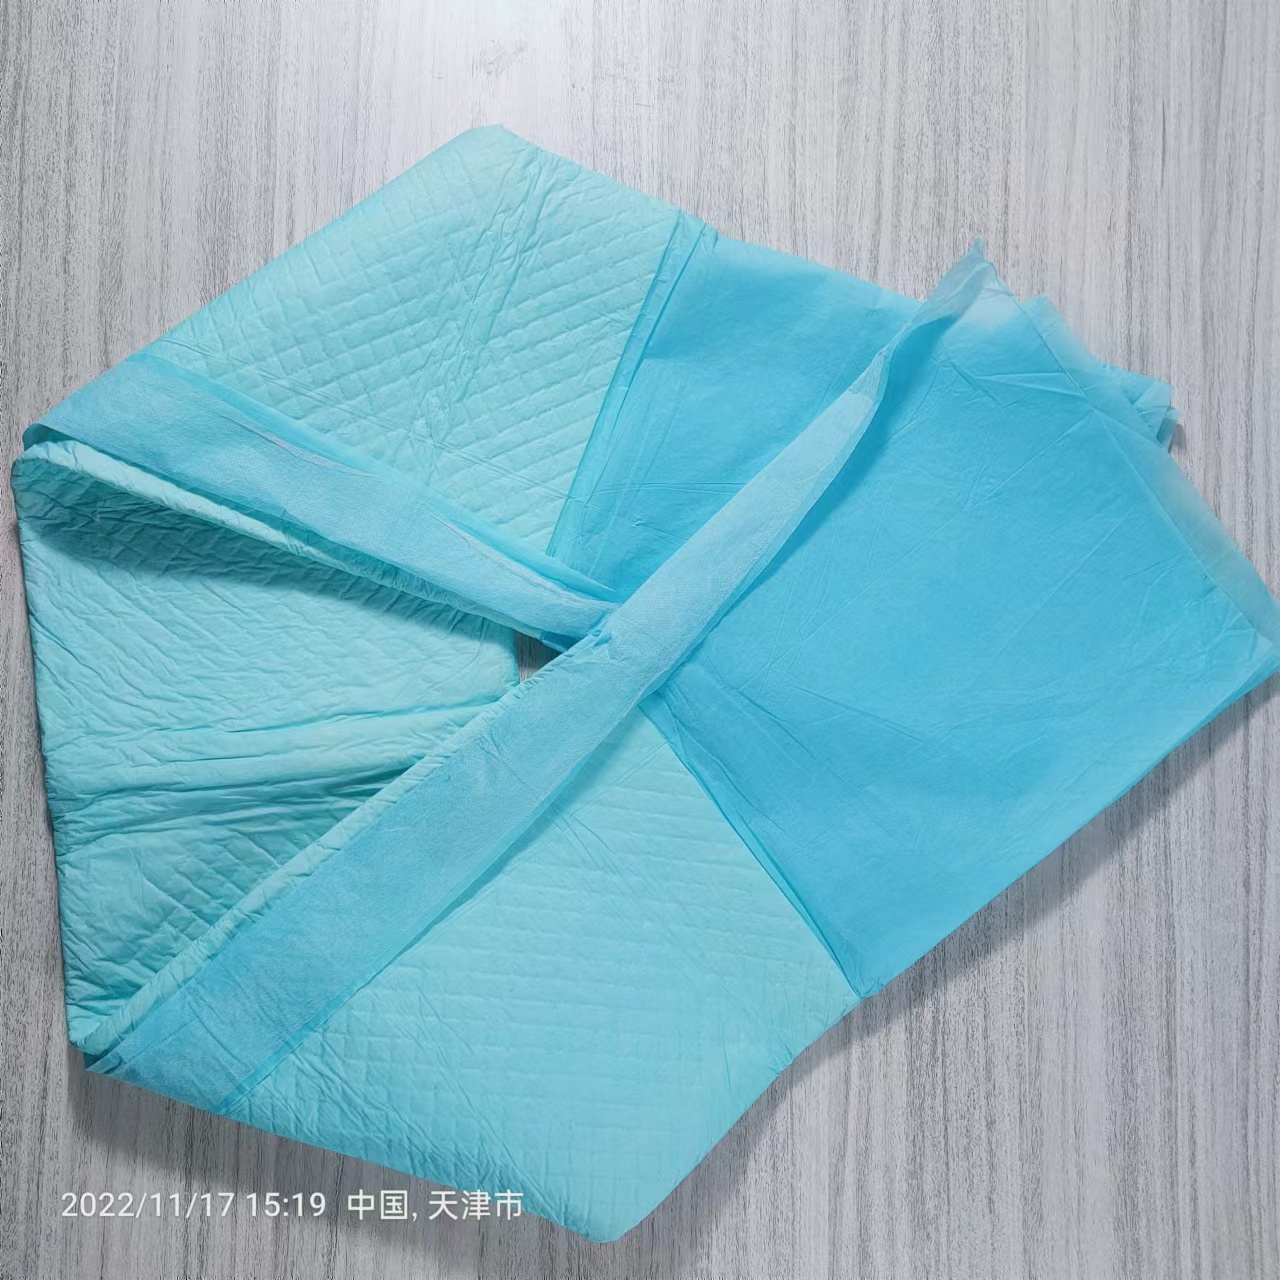 Almofada de cama médica descartável com absorção rápida fabricante chinês almofada para adultos amostra grátis almofada de cuidados de enfermagem